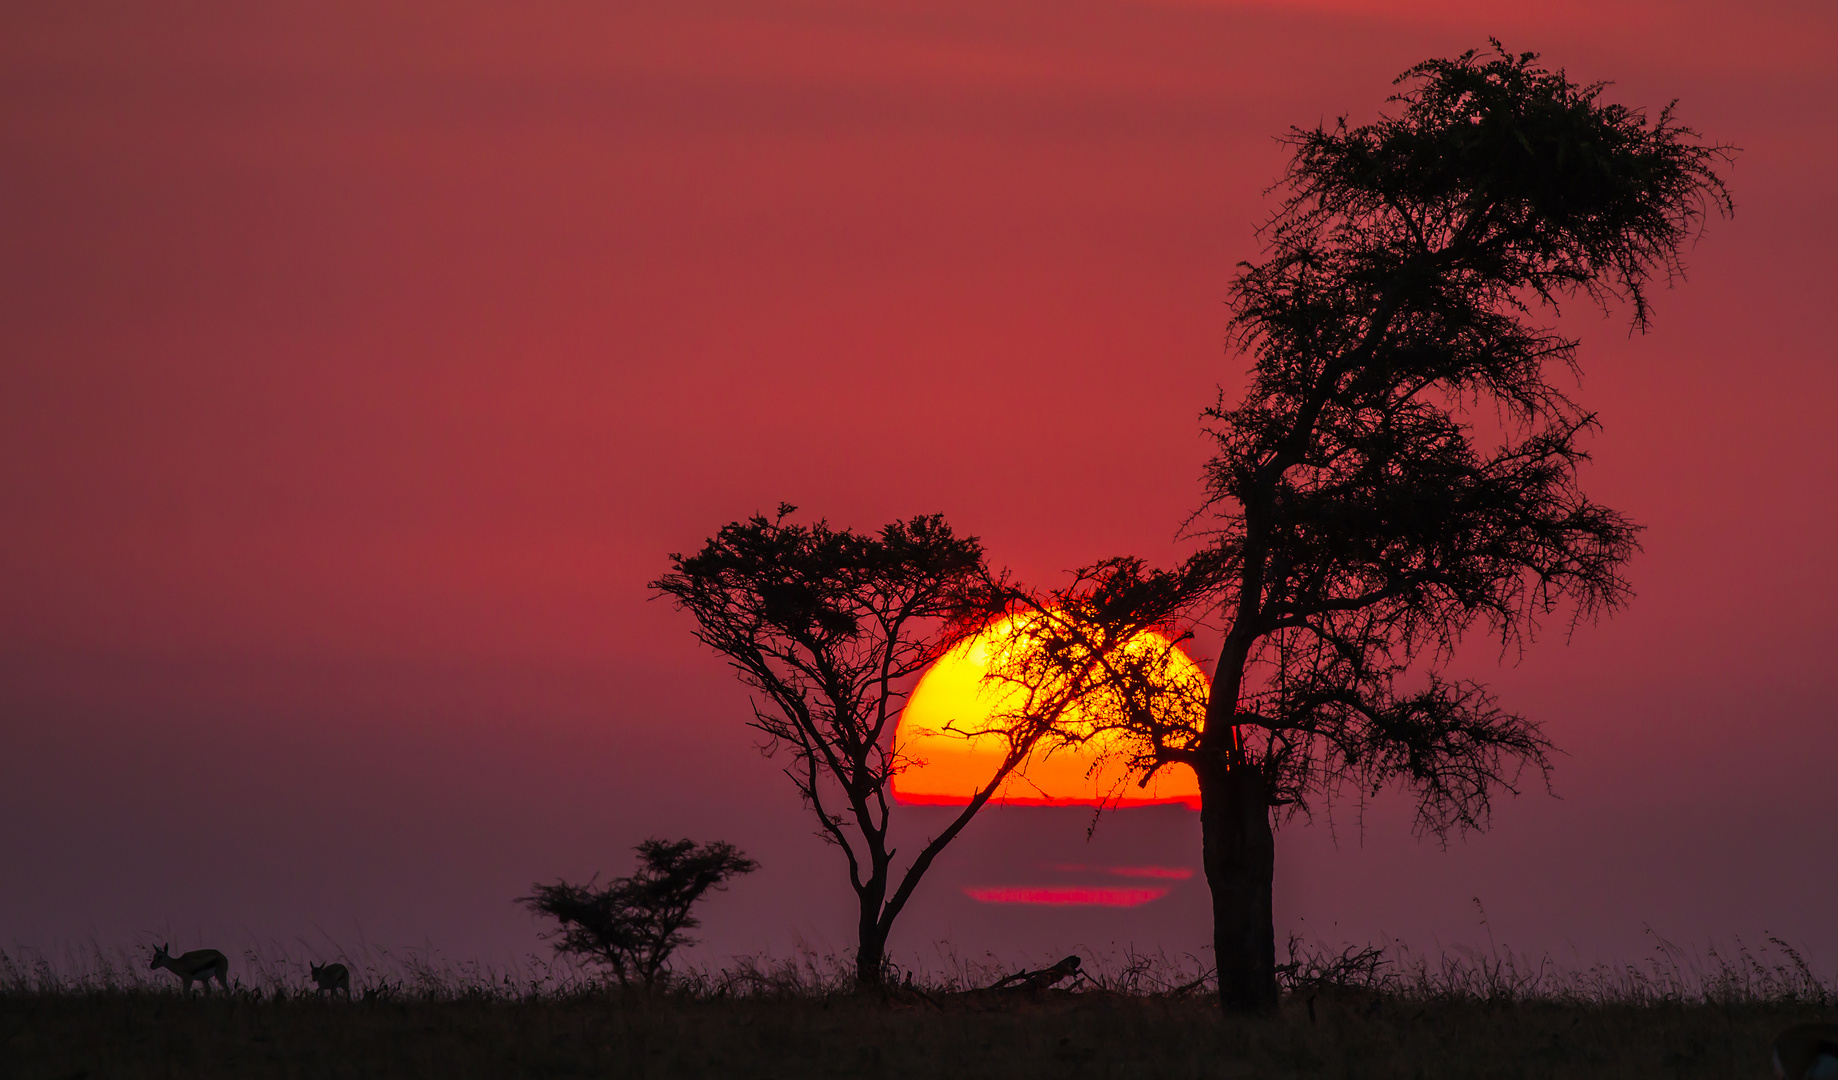 "Die Serengeti erwacht"